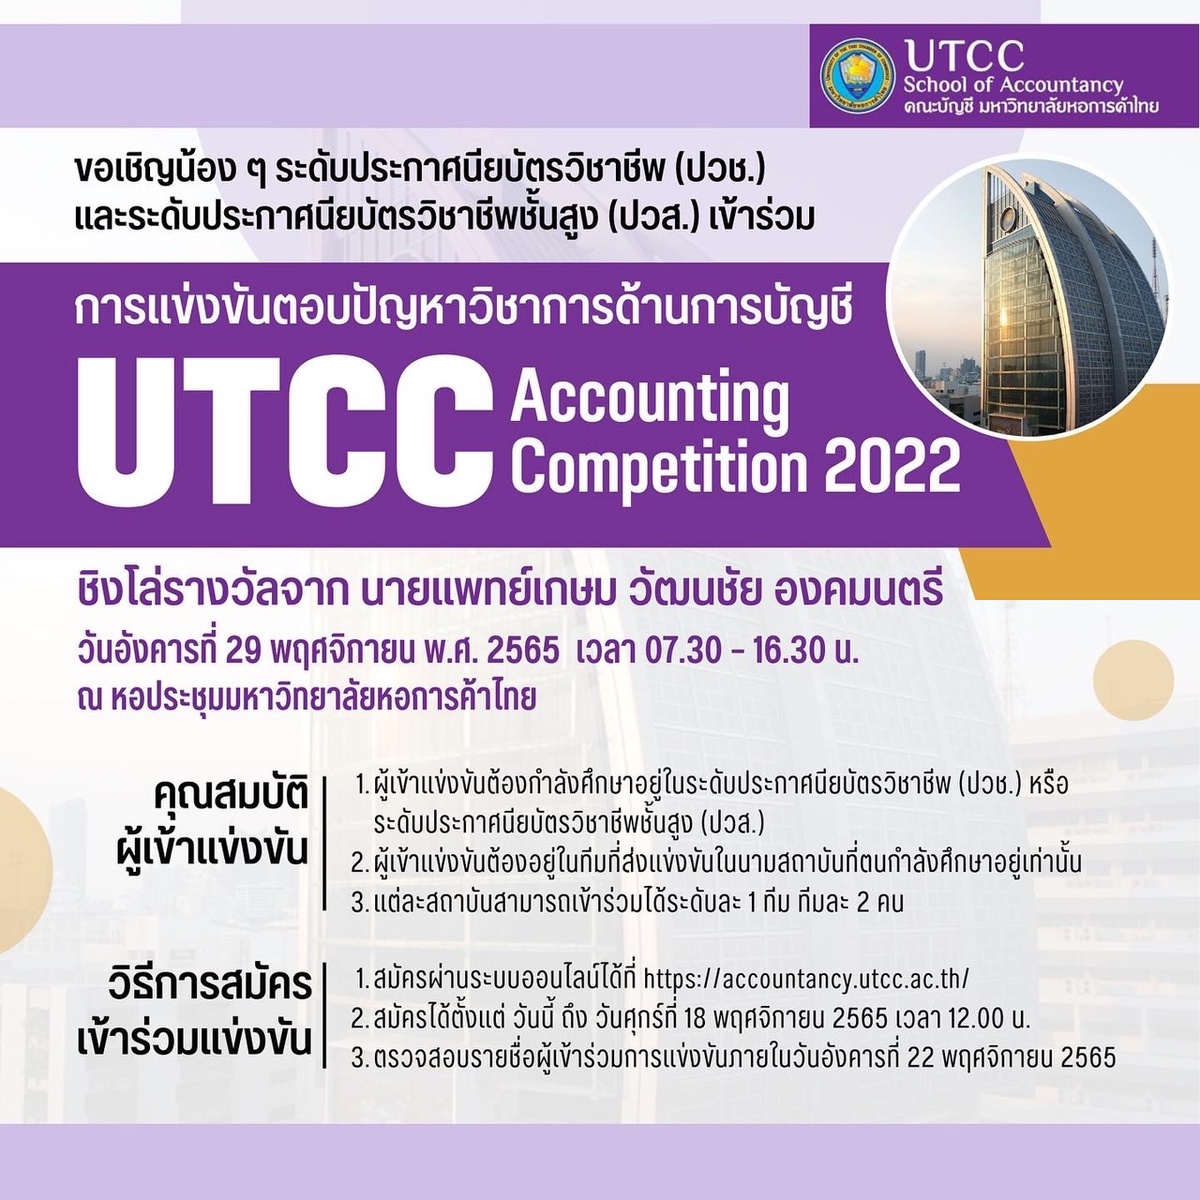 ม.หอการค้าไทย UTCC เชิญชวนเข้าร่วมตอบปัญหาทางการบัญชี Accounting Competition 2022